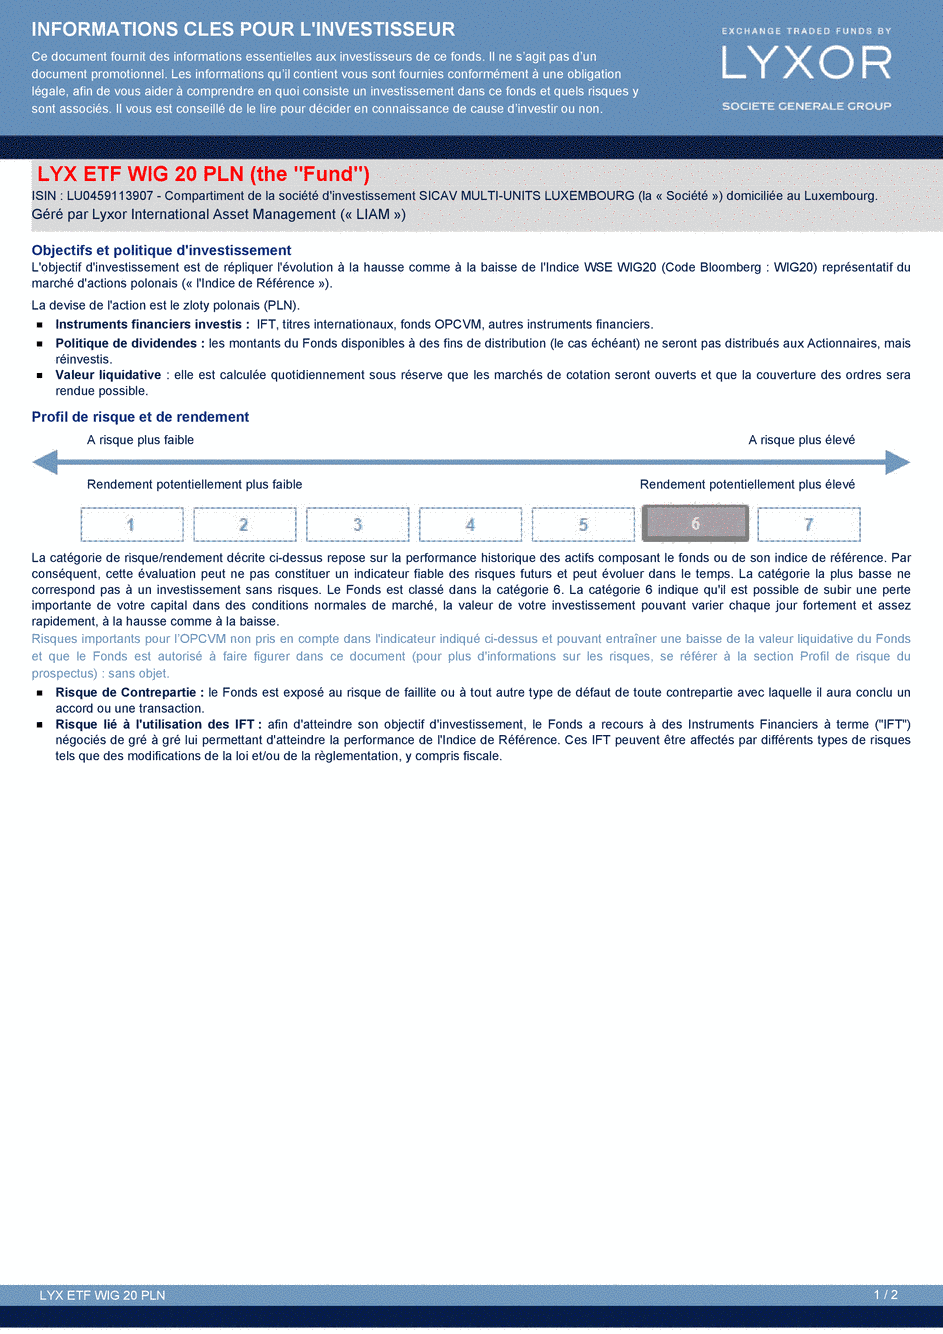 DICI Lyxor WIG 20 UCITS ETF - Acc - 26/03/2015 - Français